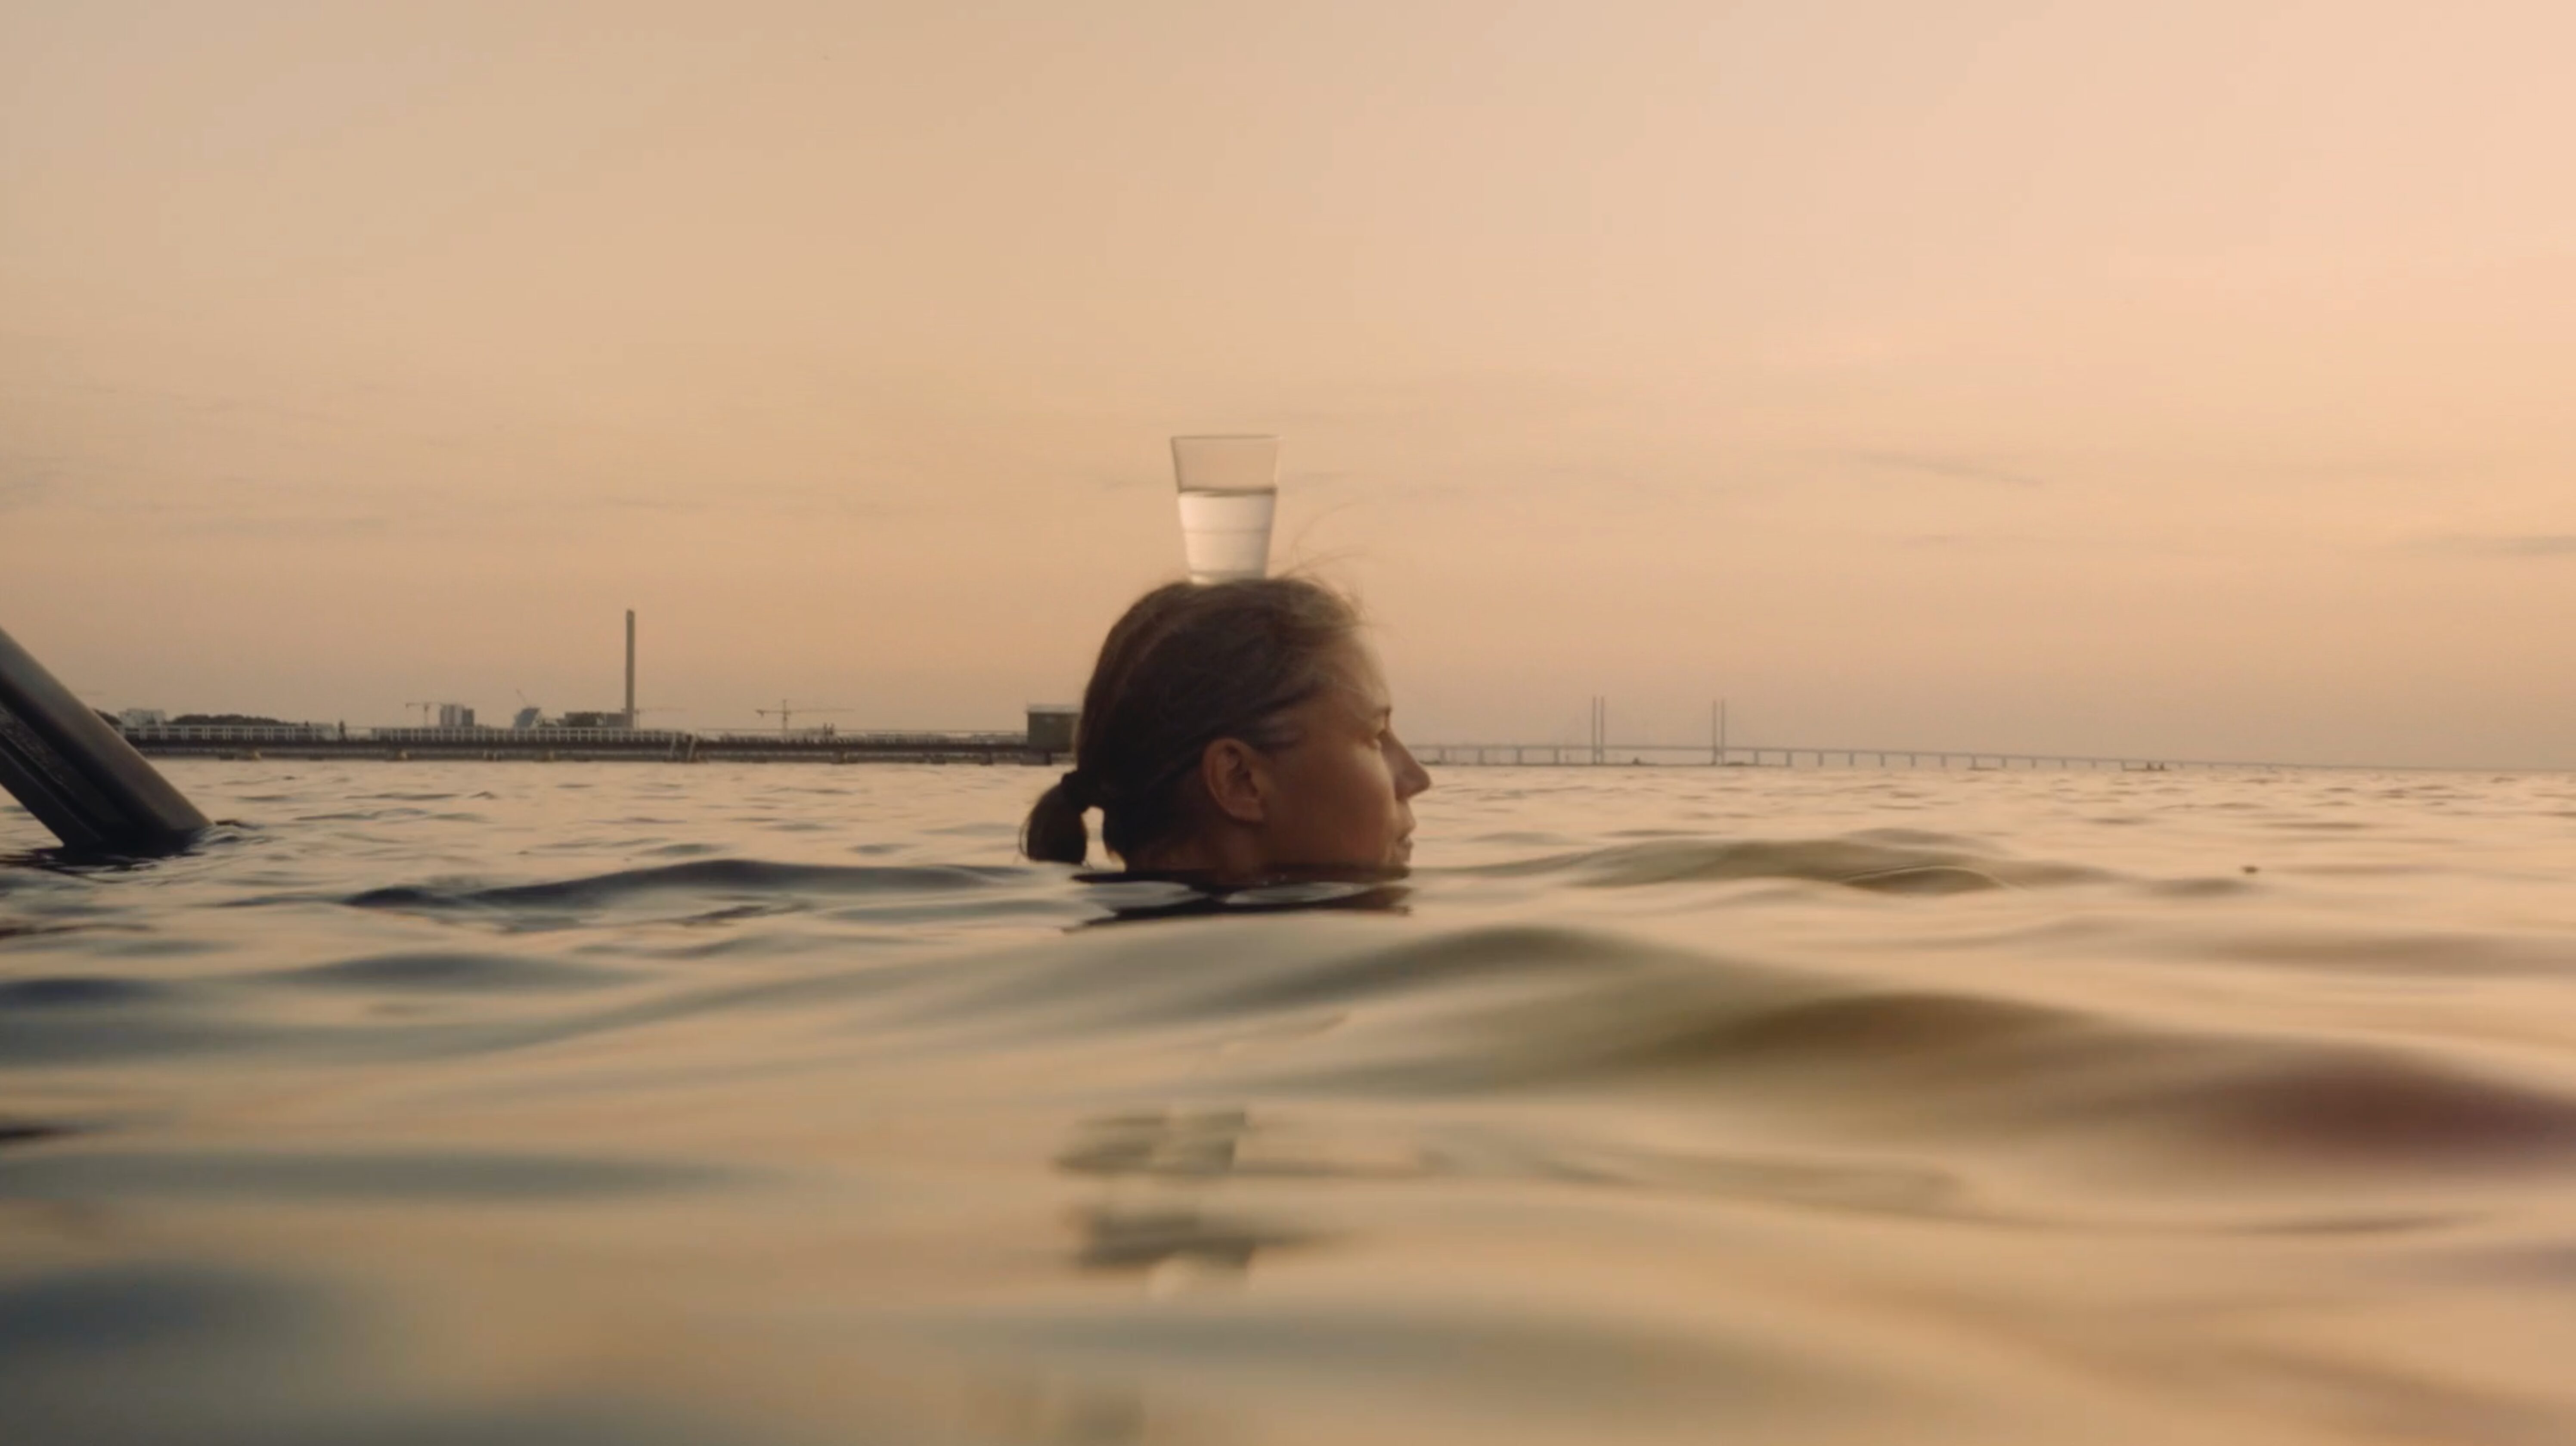 En person som simmar i havet i solnedgång, man ser bara personens huvud ovanför vattenytan. På huvudet balanserar personen ett vattenglas. I bakgrunden av bilden skymtar öresundsbron och några byggnader.